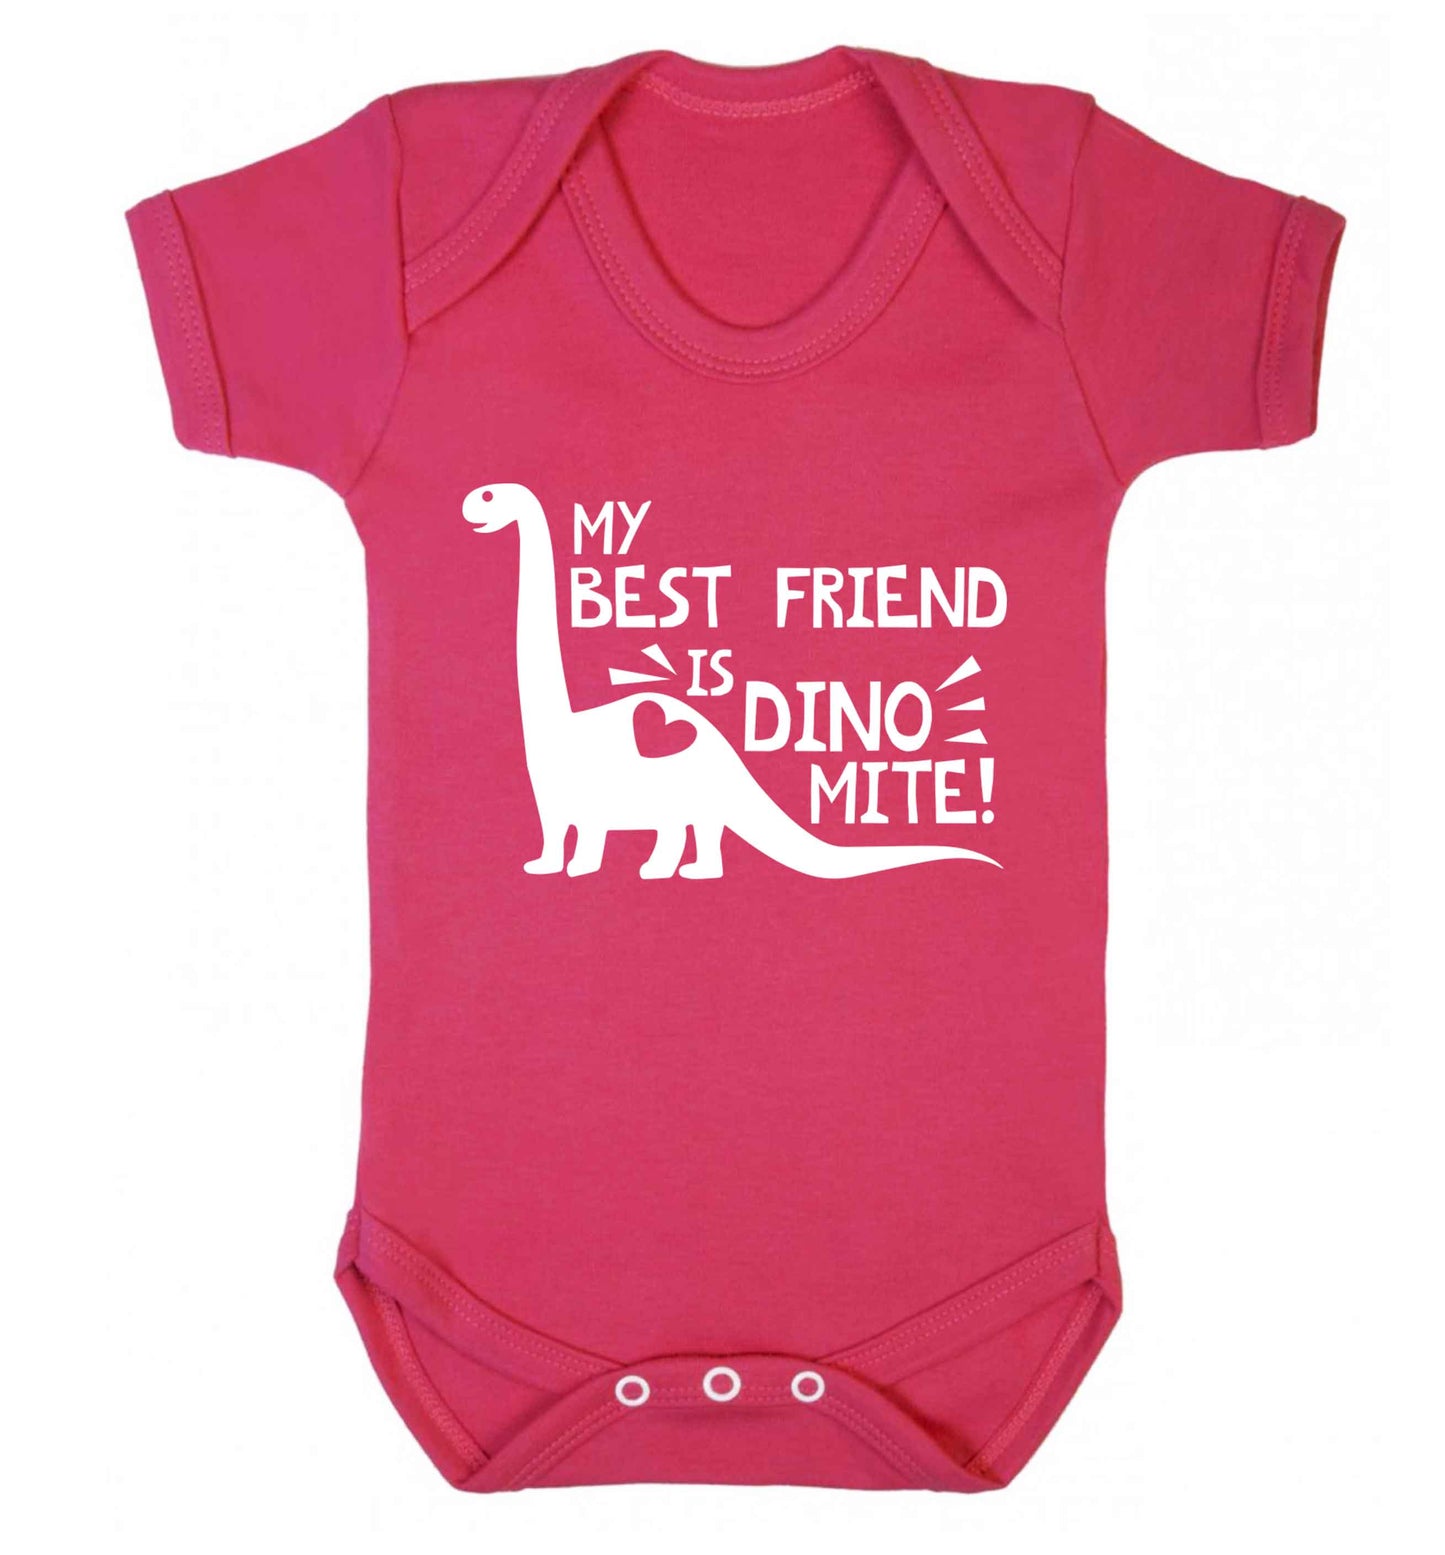 My best friend is dinomite! Baby Vest dark pink 18-24 months